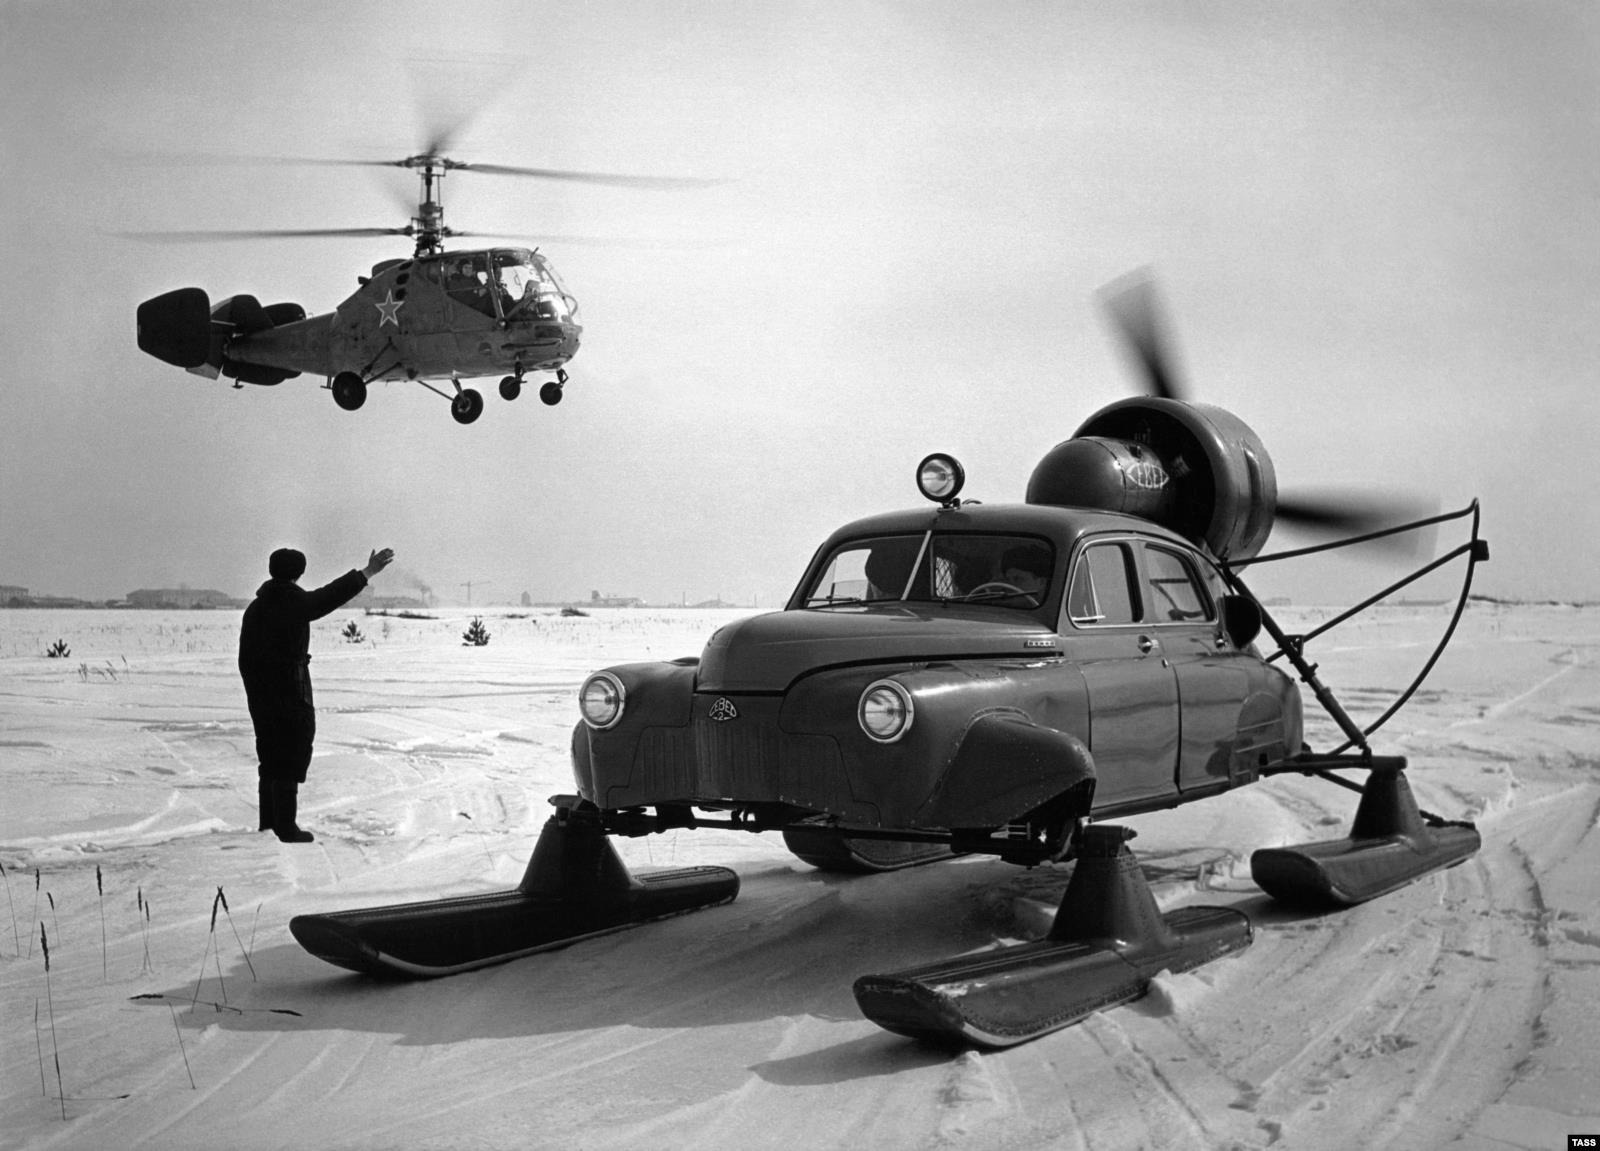 تصاویری از یک خودروی عجیب در شوروی!